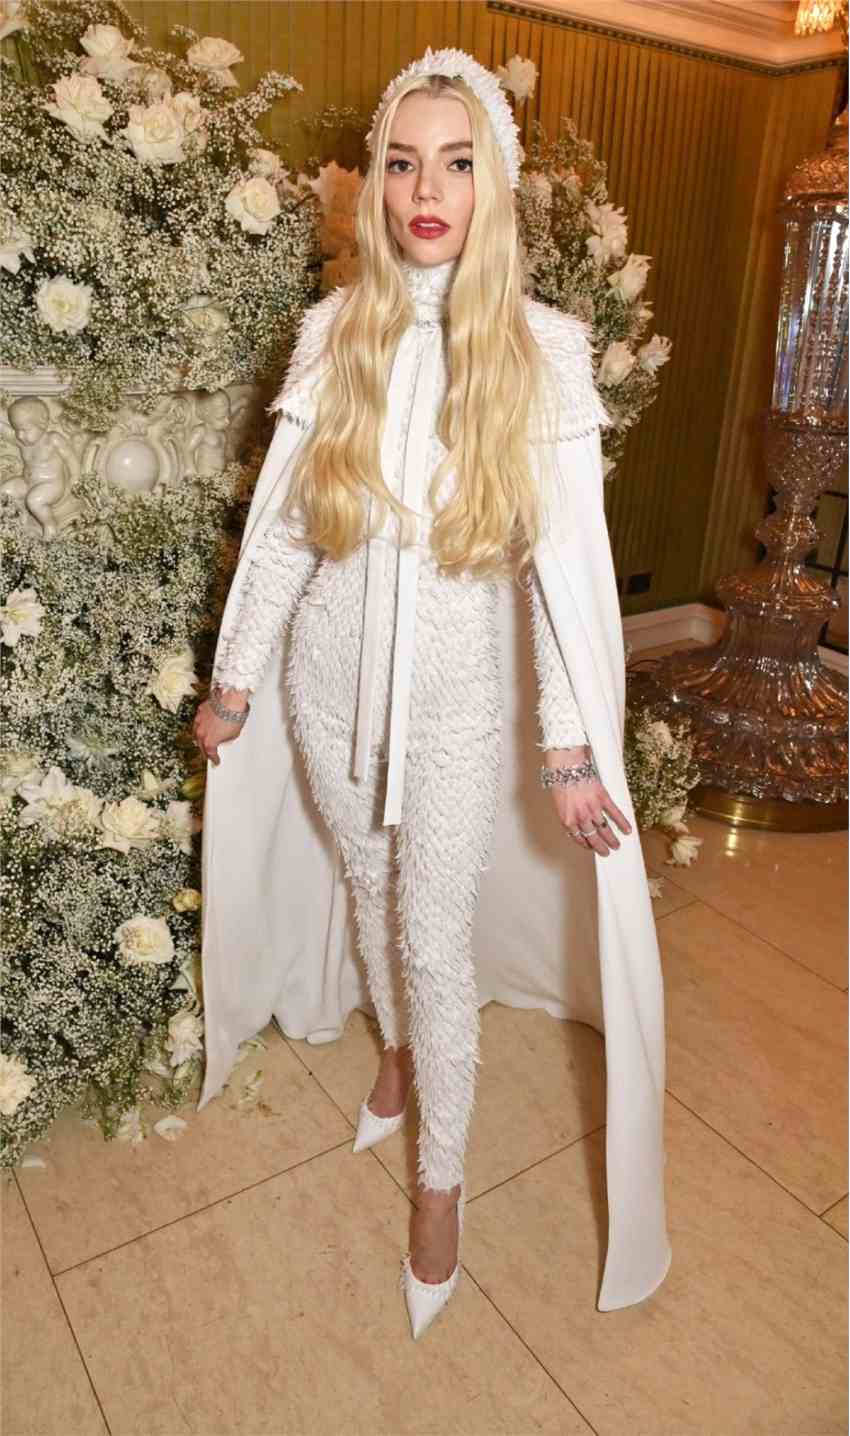 是天鹅吗?安雅·泰勒-乔伊穿白羽造型亮相时尚派对